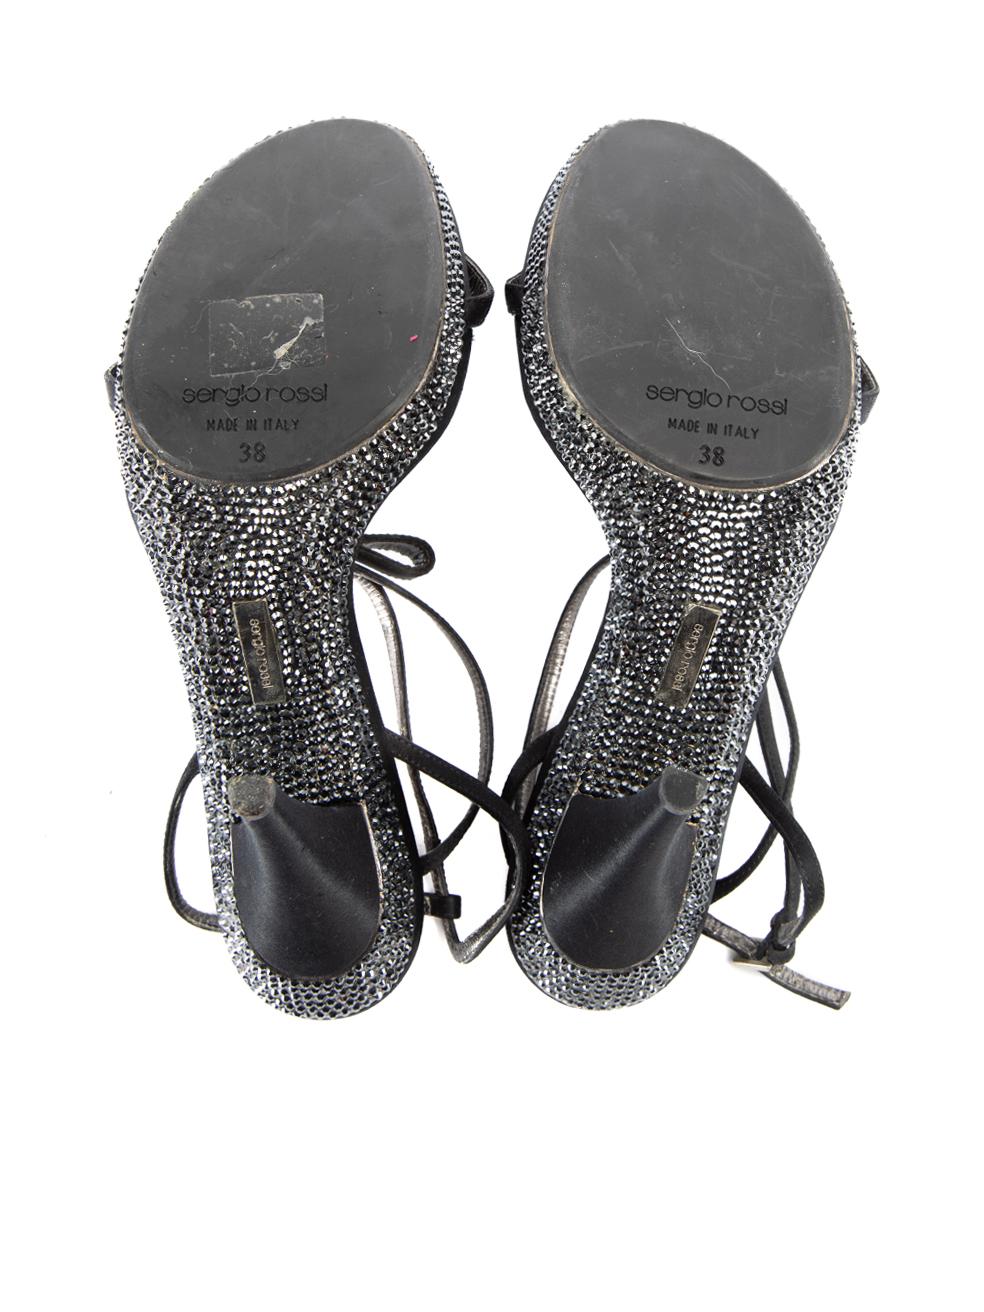 Pre-Loved Sergio Rossi Women's Black Crystal Embellished Platform Sandals For Sale 1